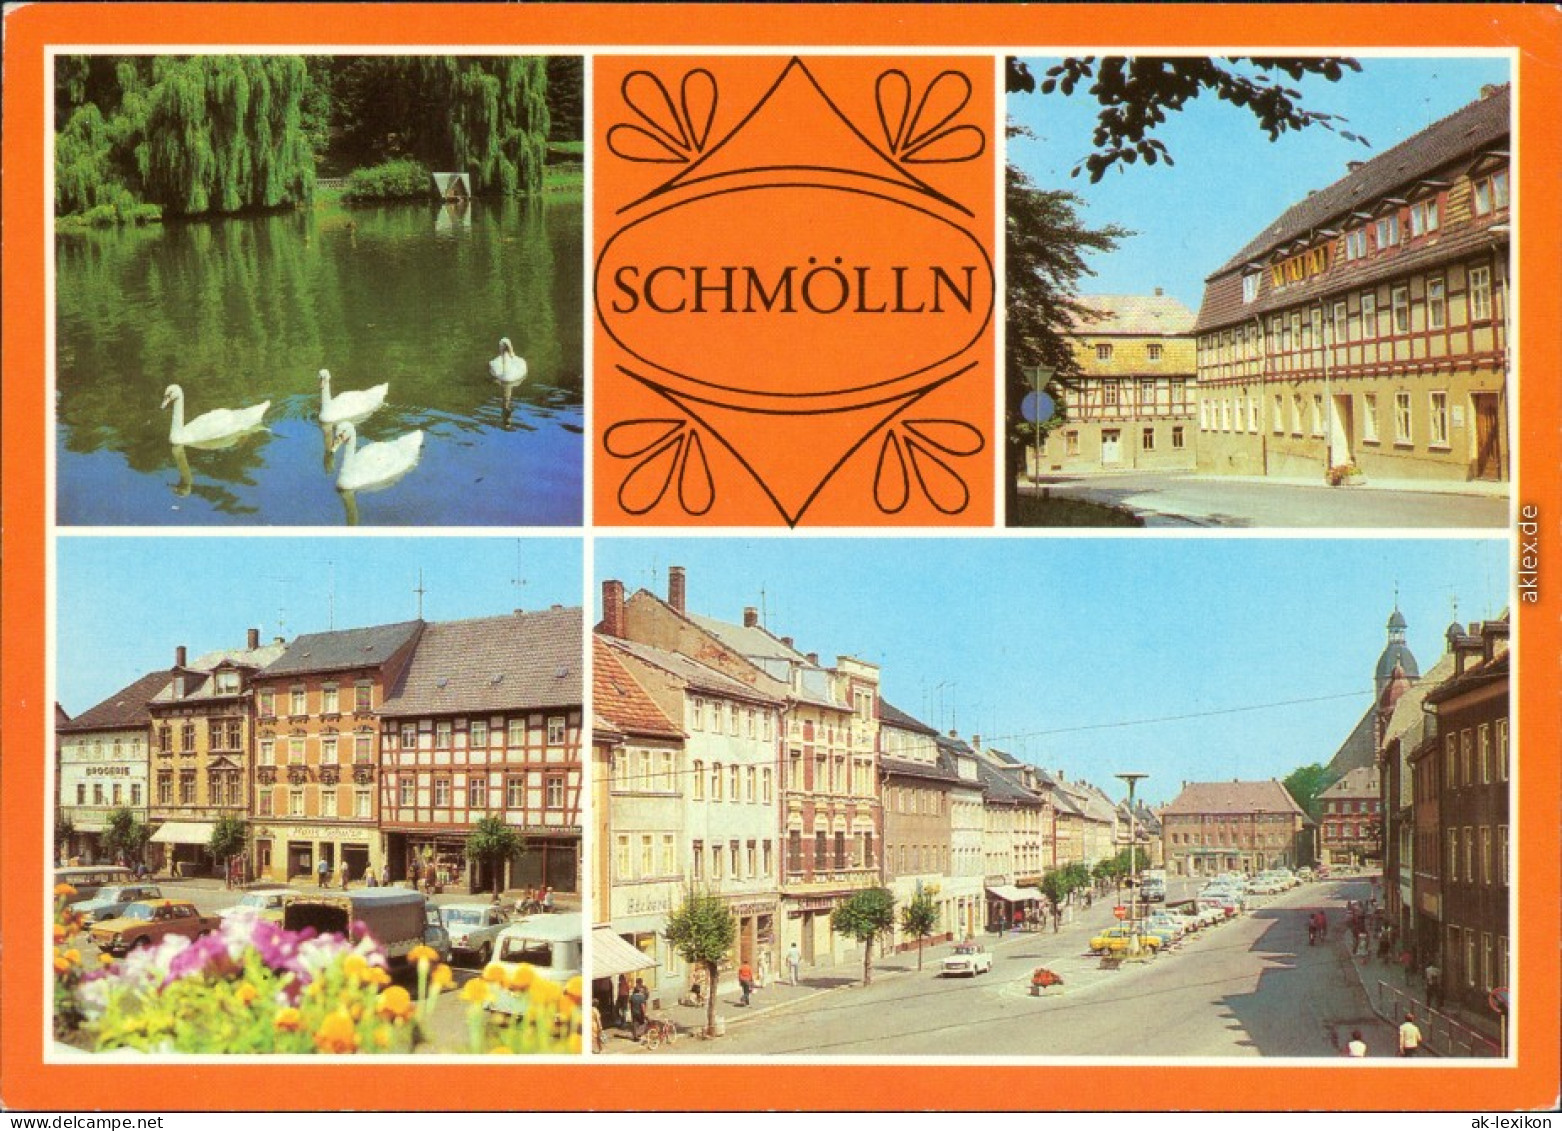 Ansichtskarte Schmölln Brauereiteich, Standesamt, Marktplatz 1981 - Schmoelln